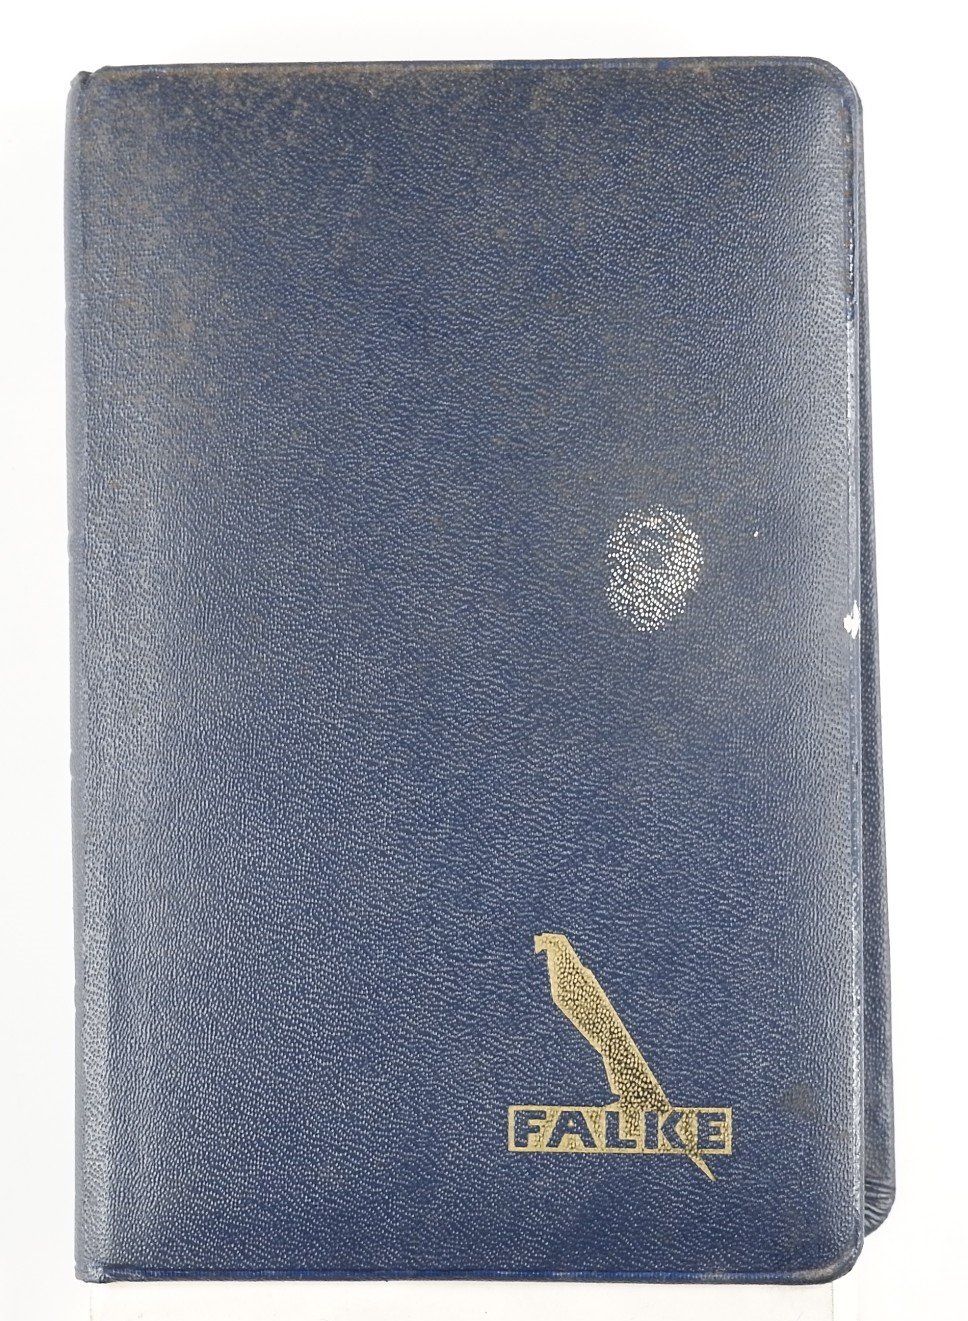 Notizbuch mit Kalendarium für das Jahr 1956 als Werbegeschenk der Firma Falke - Cover (Volkskunde- und Freilichtmuseum Roscheider Hof RR-F)